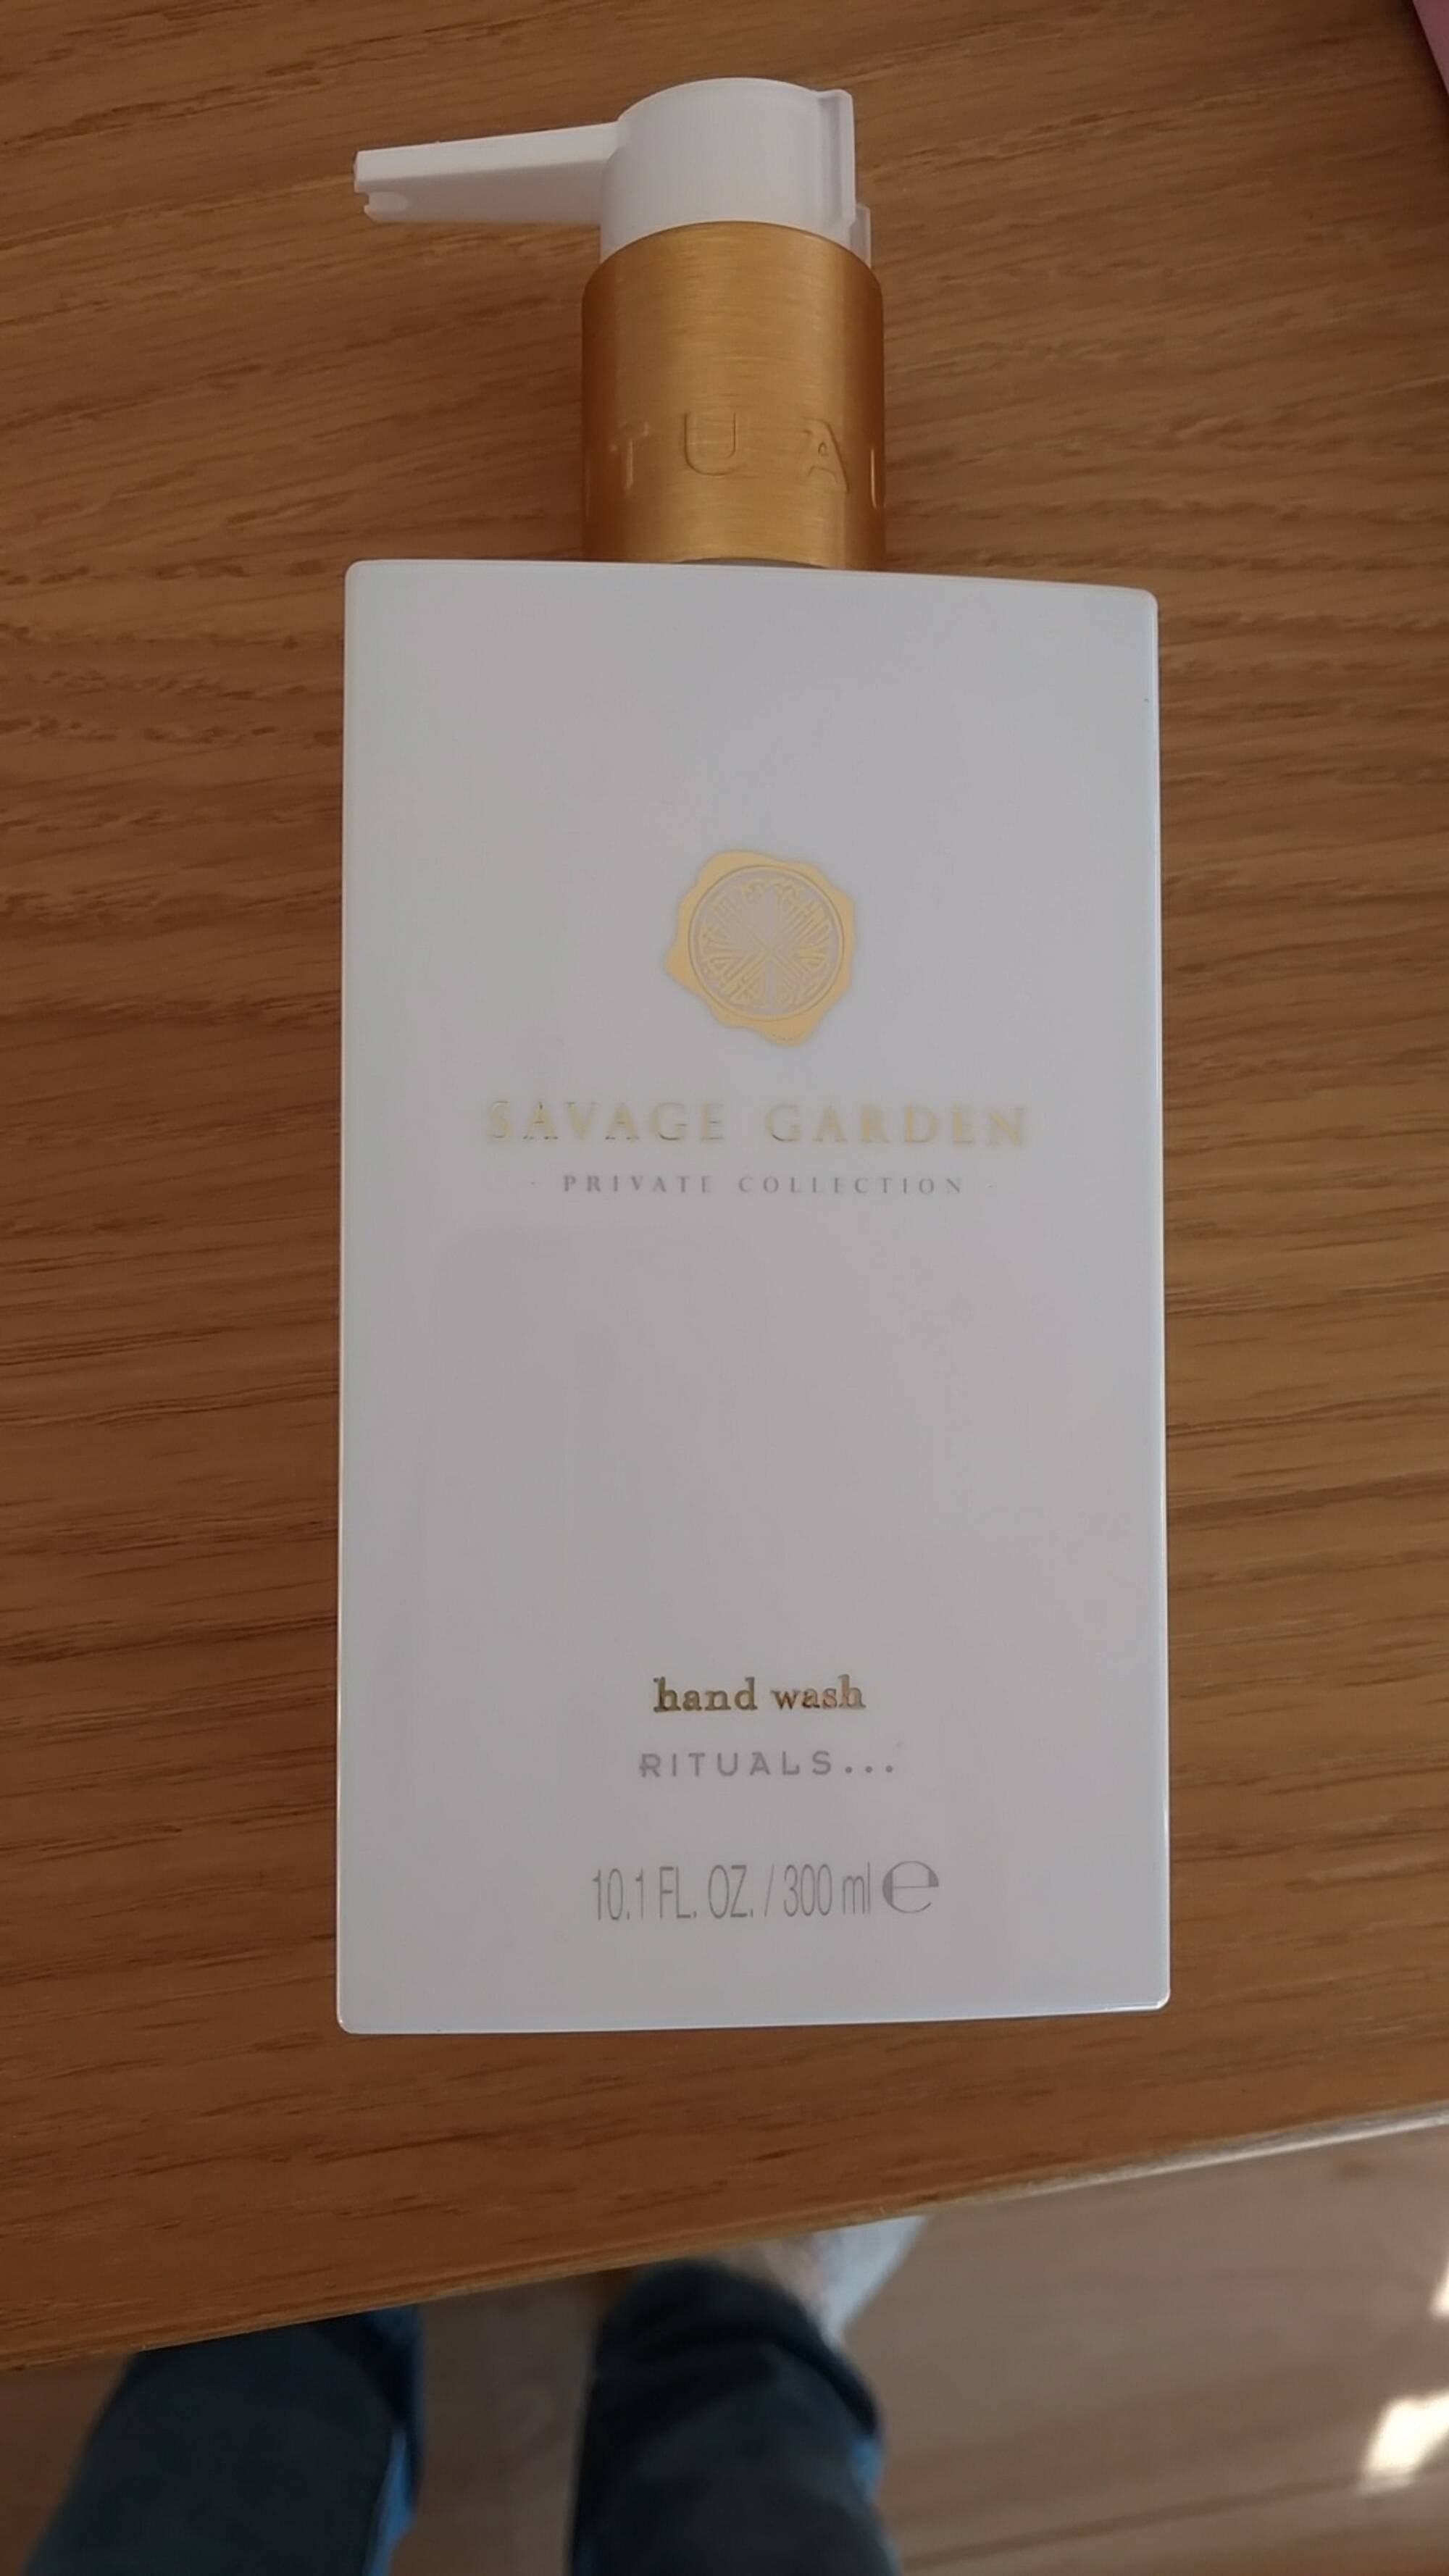 RITUALS - Savage Garden - Hand wash